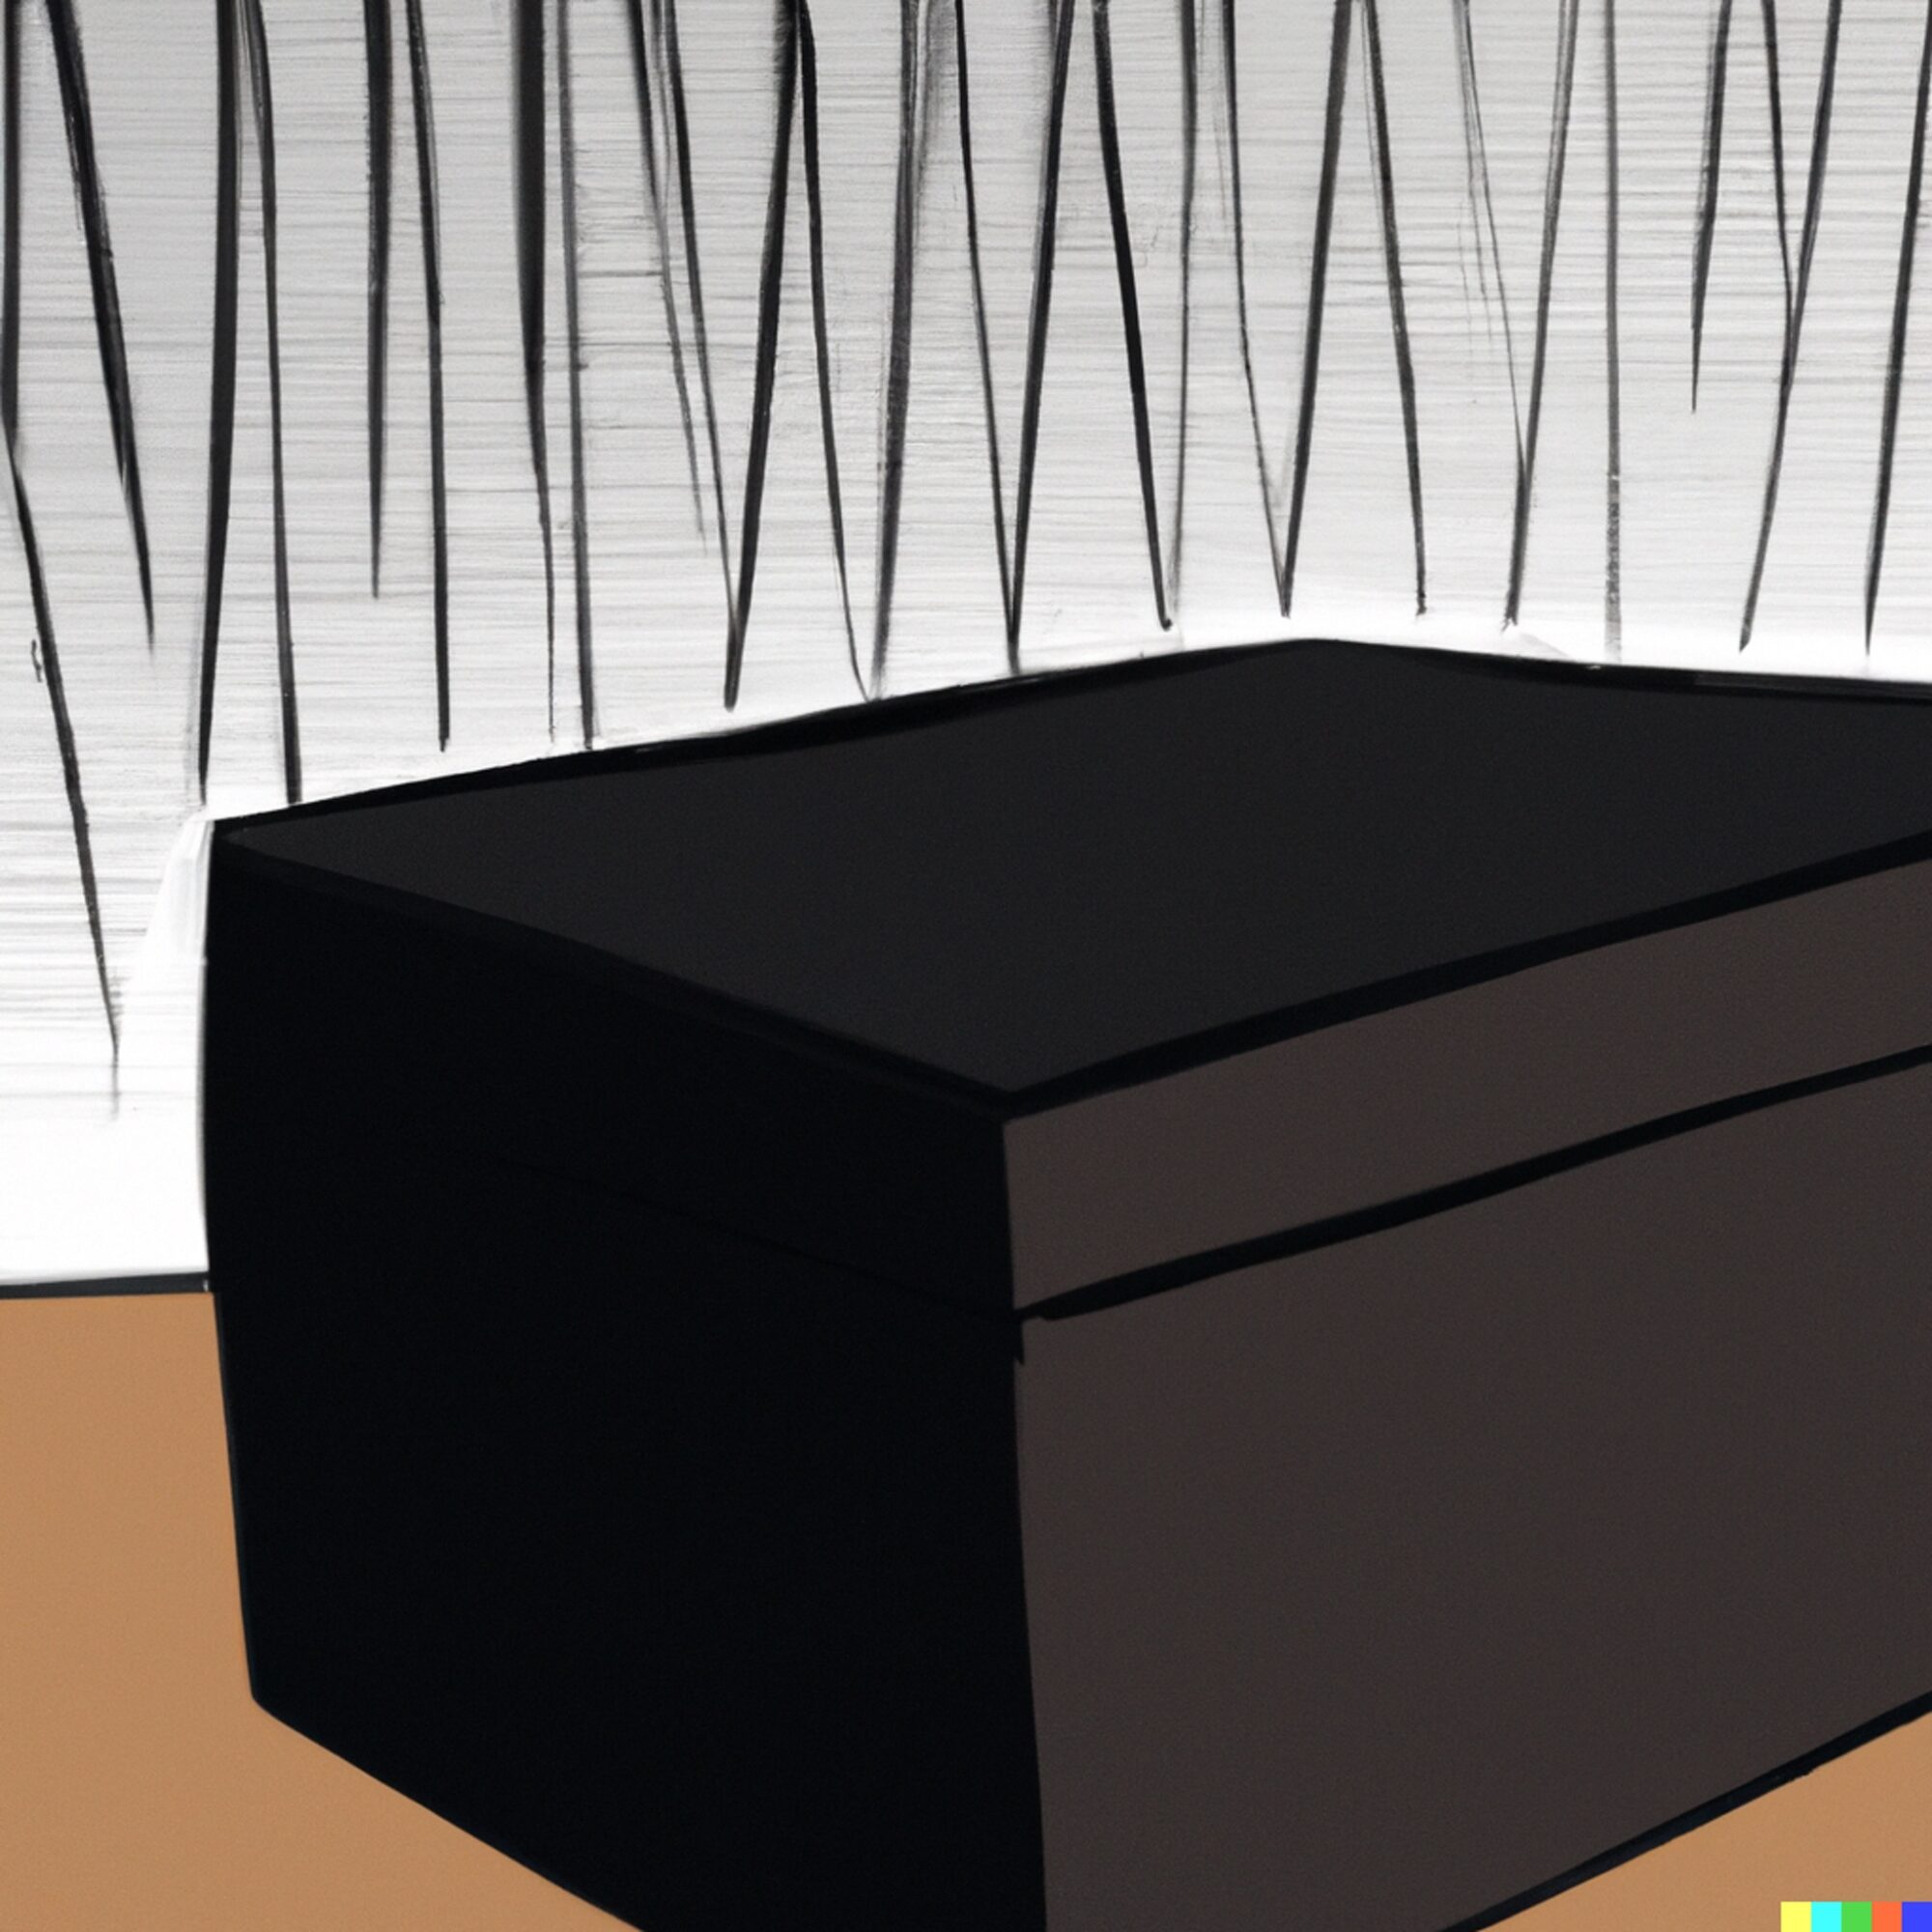 Bild: Schwarze Schachtel auf einem Tisch (AI-generiert, gezeichnet)